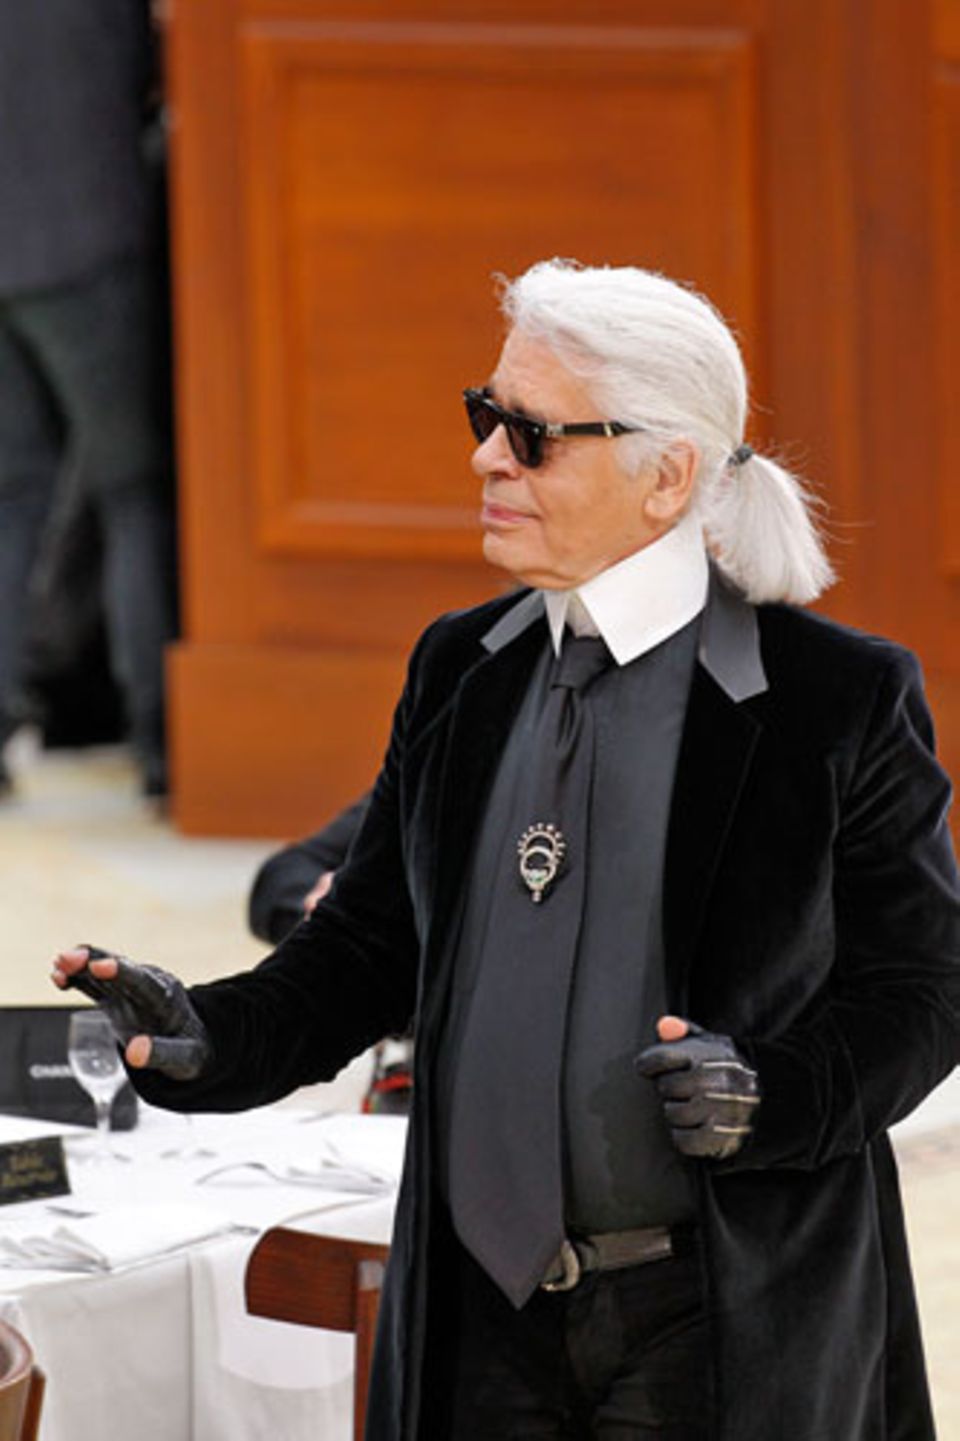 So schick darf Alltag sein: Karl Lagerfeld zeigt seine neue Chanel-Kollektion